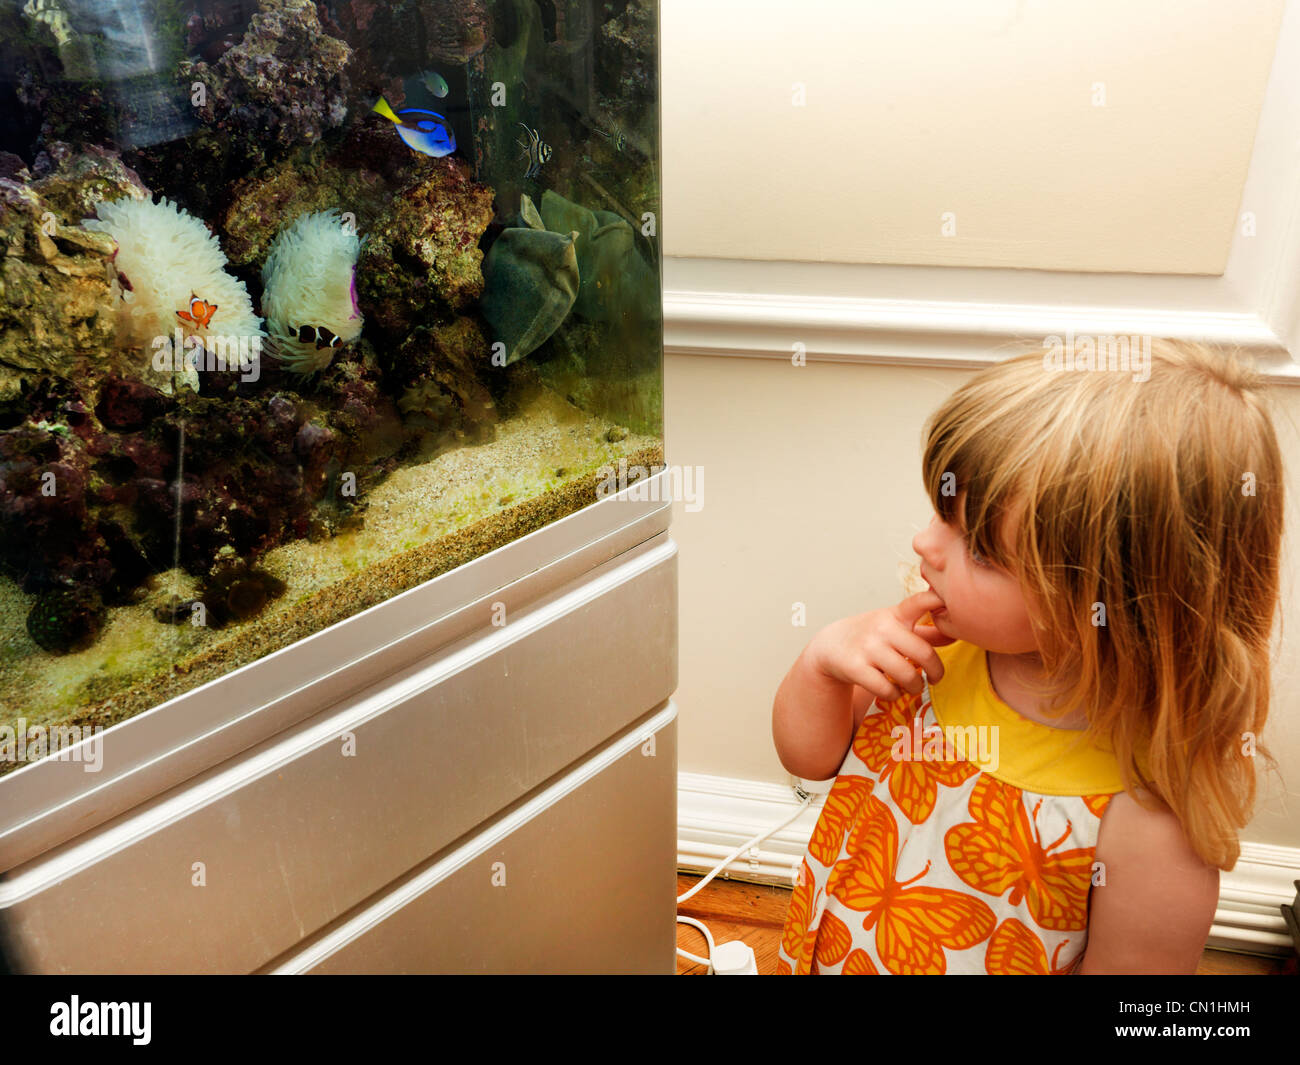 Jeune fille à la recherche de poisson dans le réservoir Poisson de mer Banque D'Images